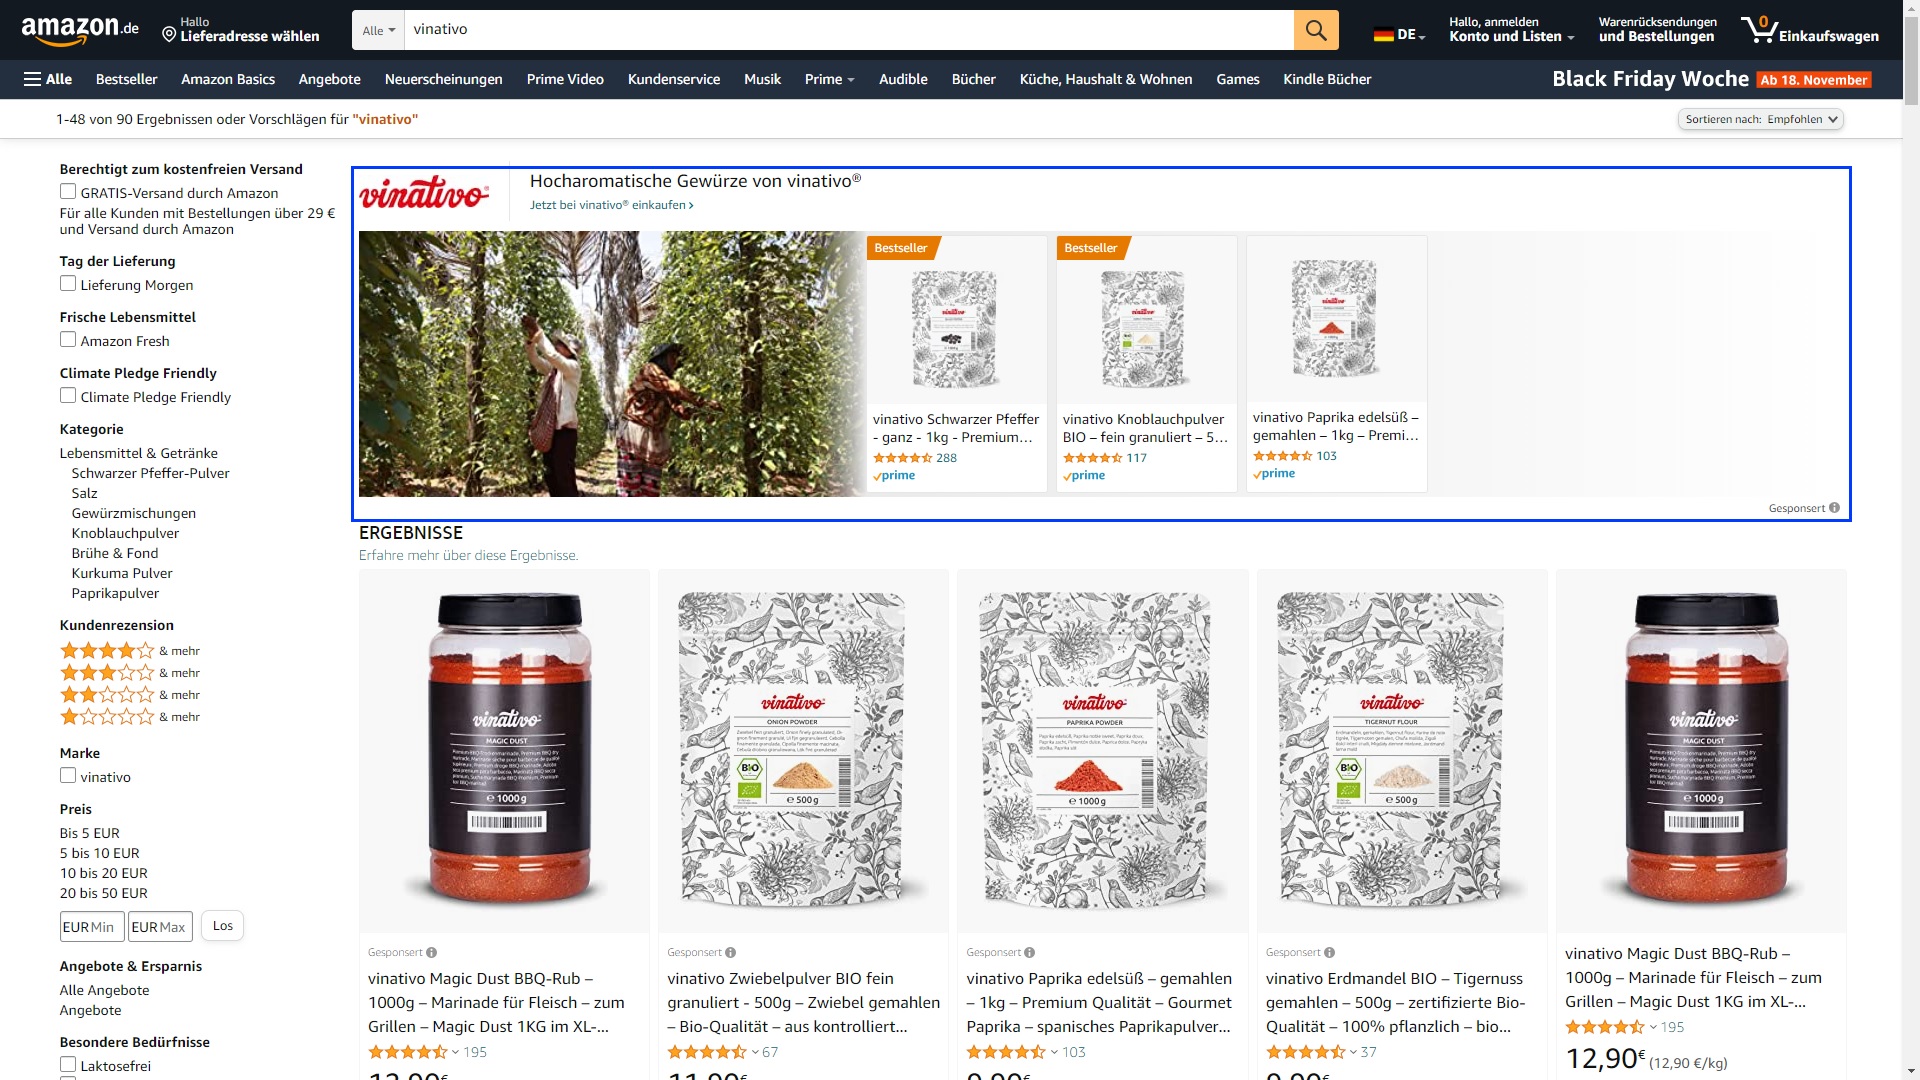 Das Bild zeigt exemplarisch eine Markenschutz-Kampagne von vinativo auf Amazon